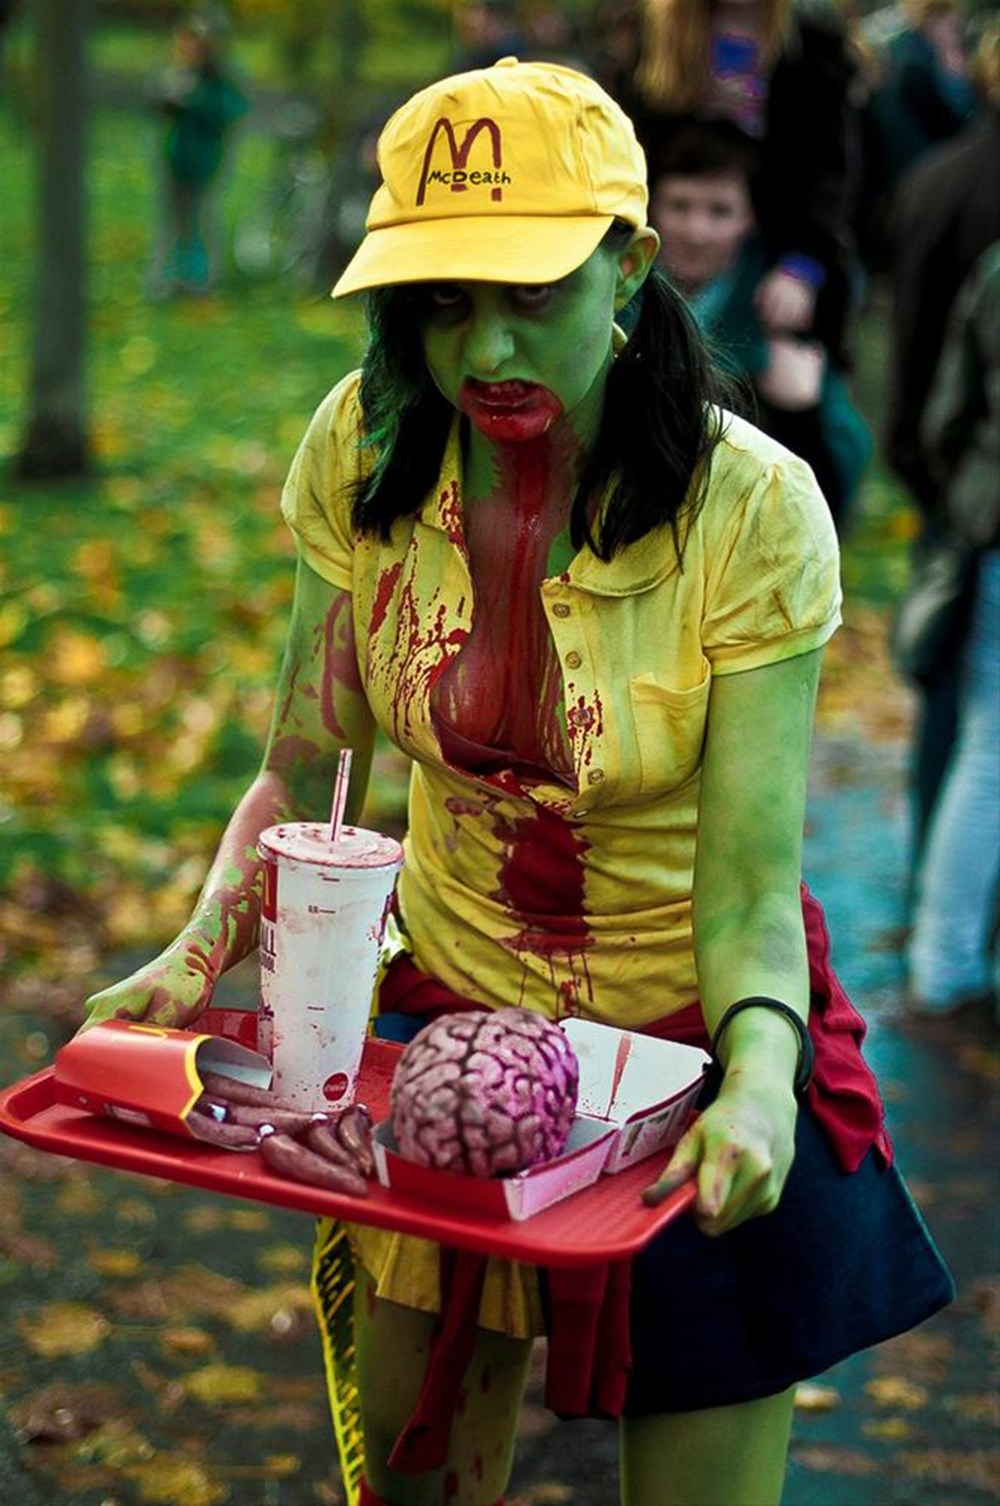 Mcdonalds cosplay. Девушка косплеит зомби.